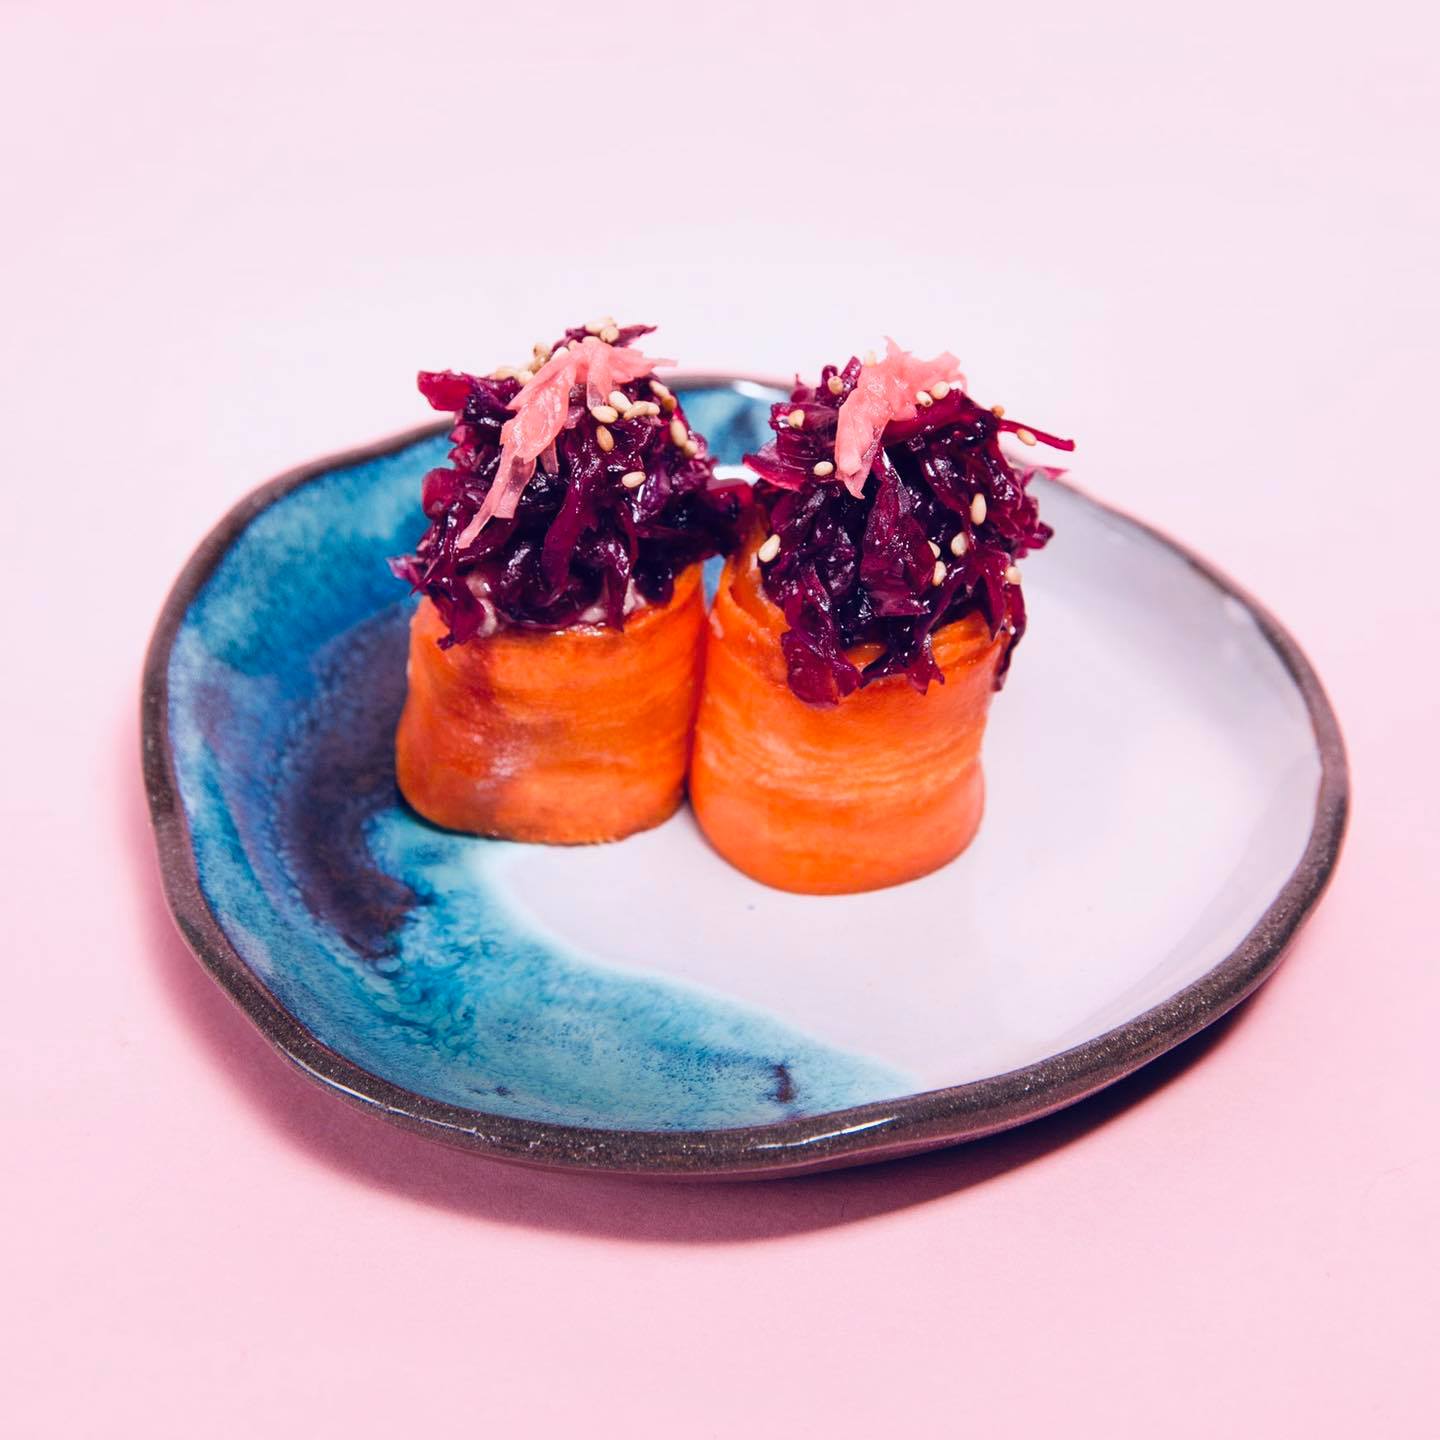 Vege sushi Mokotów - torcik z marchewką i kinpirą z kapusty